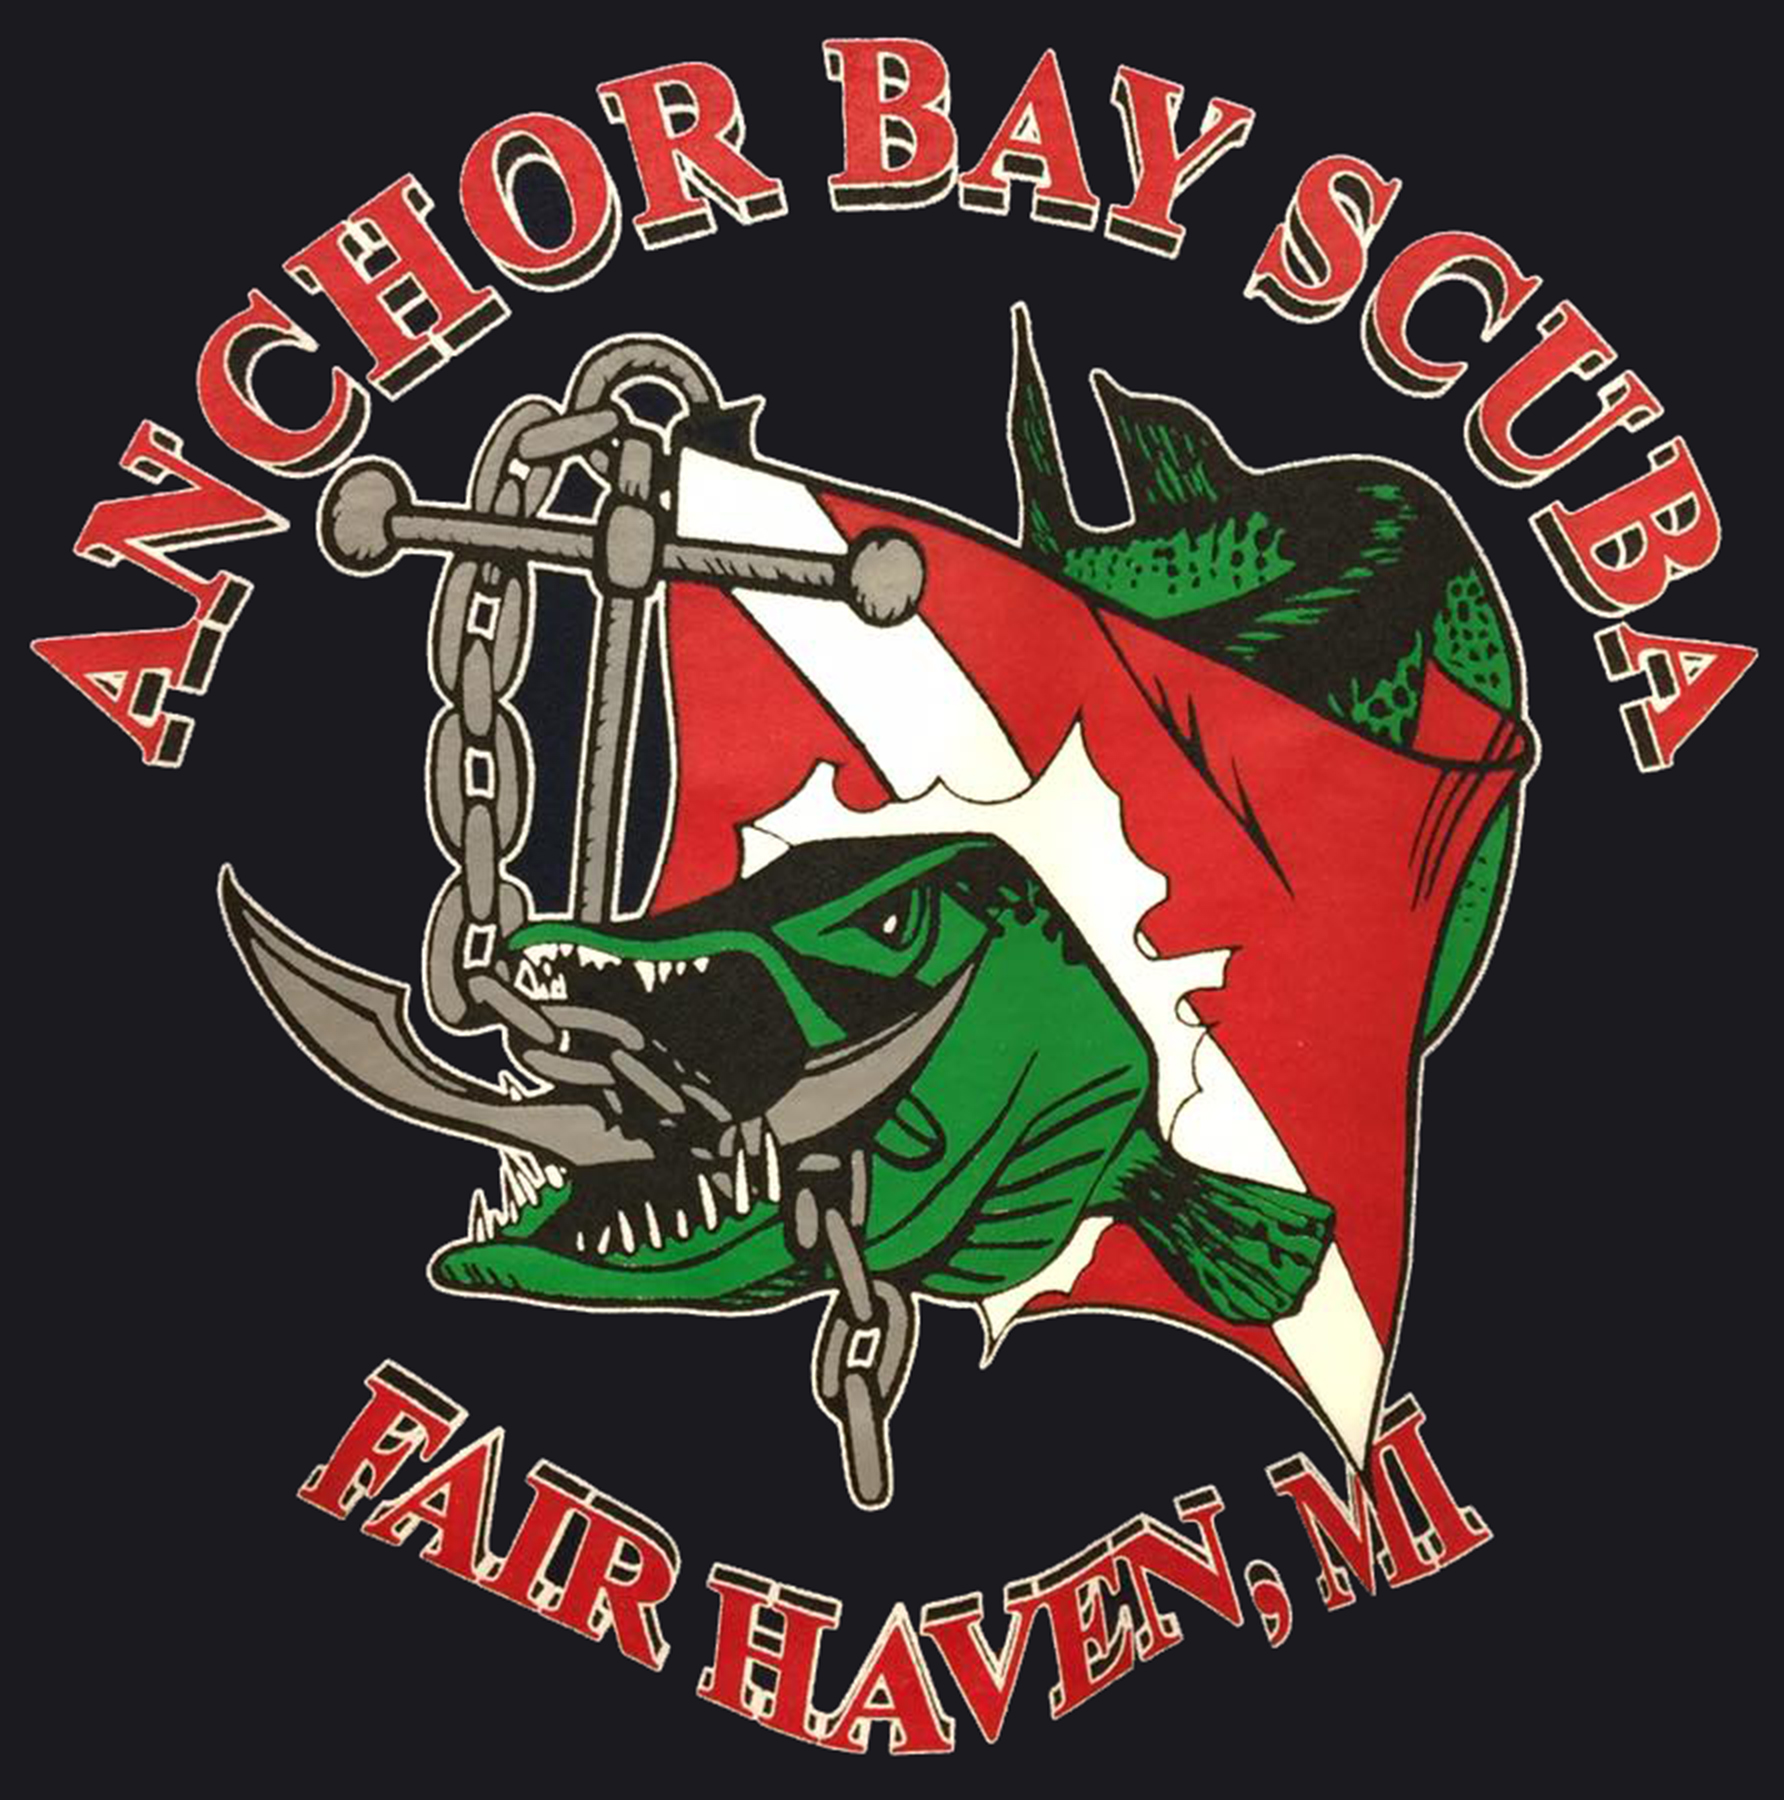 anchor bay scuba